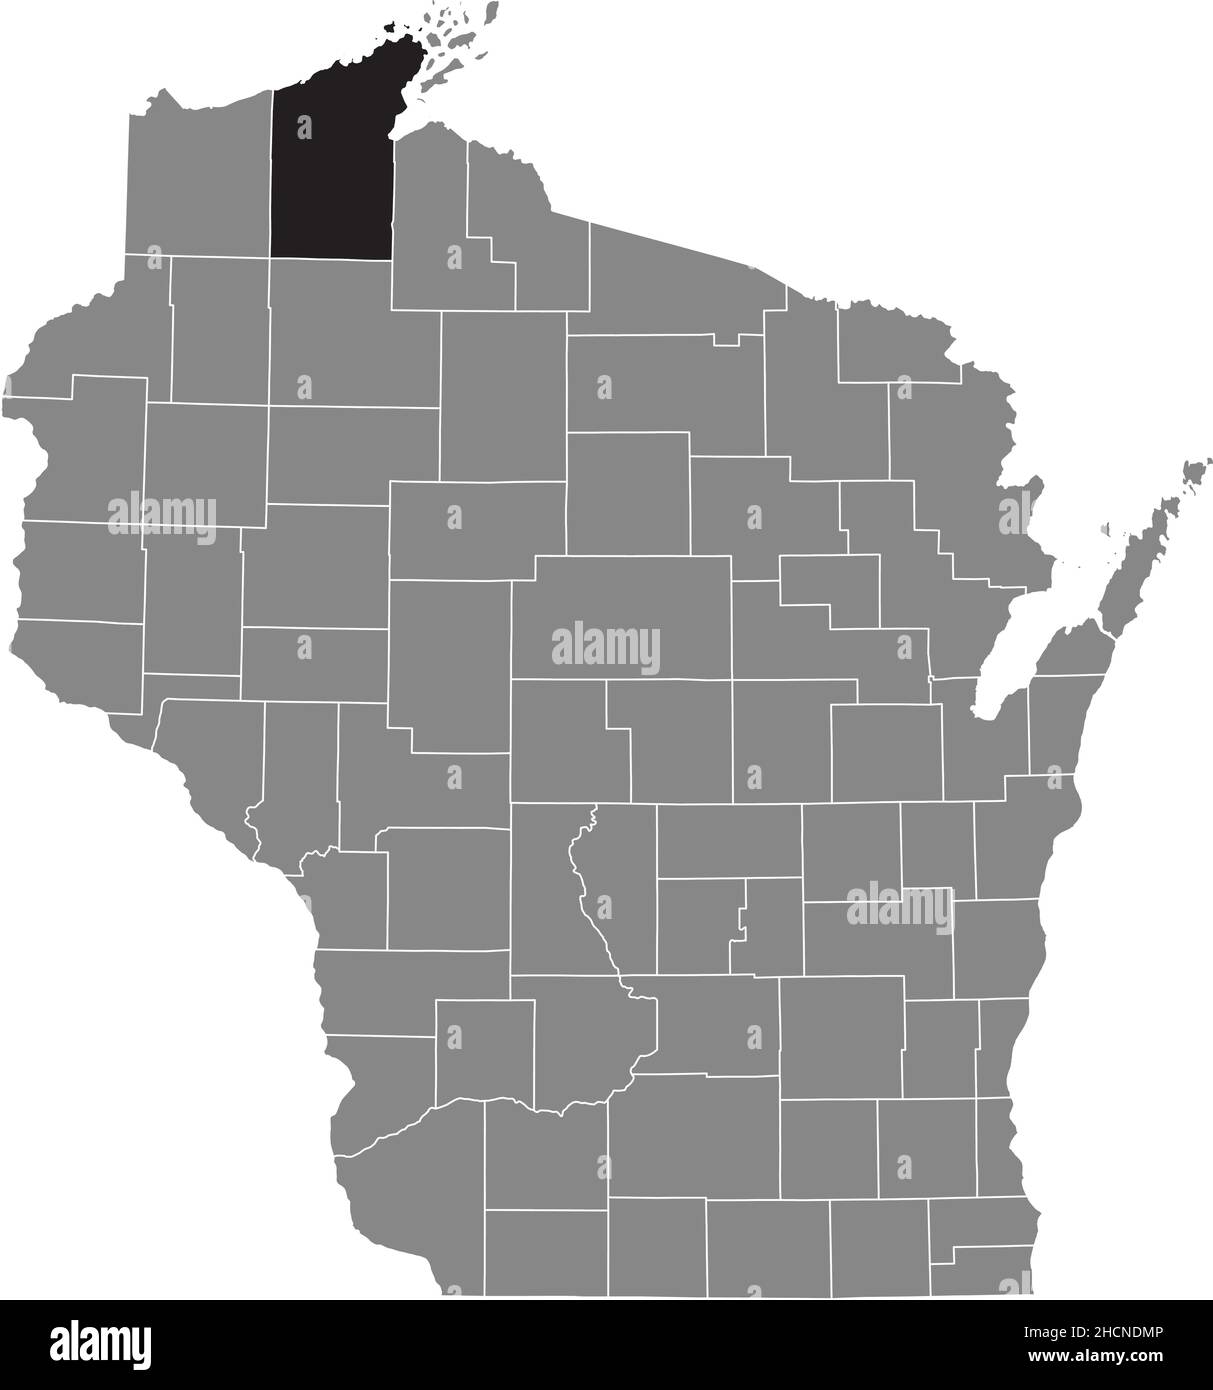 Mappa della posizione evidenziata in nero della contea di Bayfield all'interno della mappa amministrativa grigia dello stato federale del Wisconsin, USA Illustrazione Vettoriale